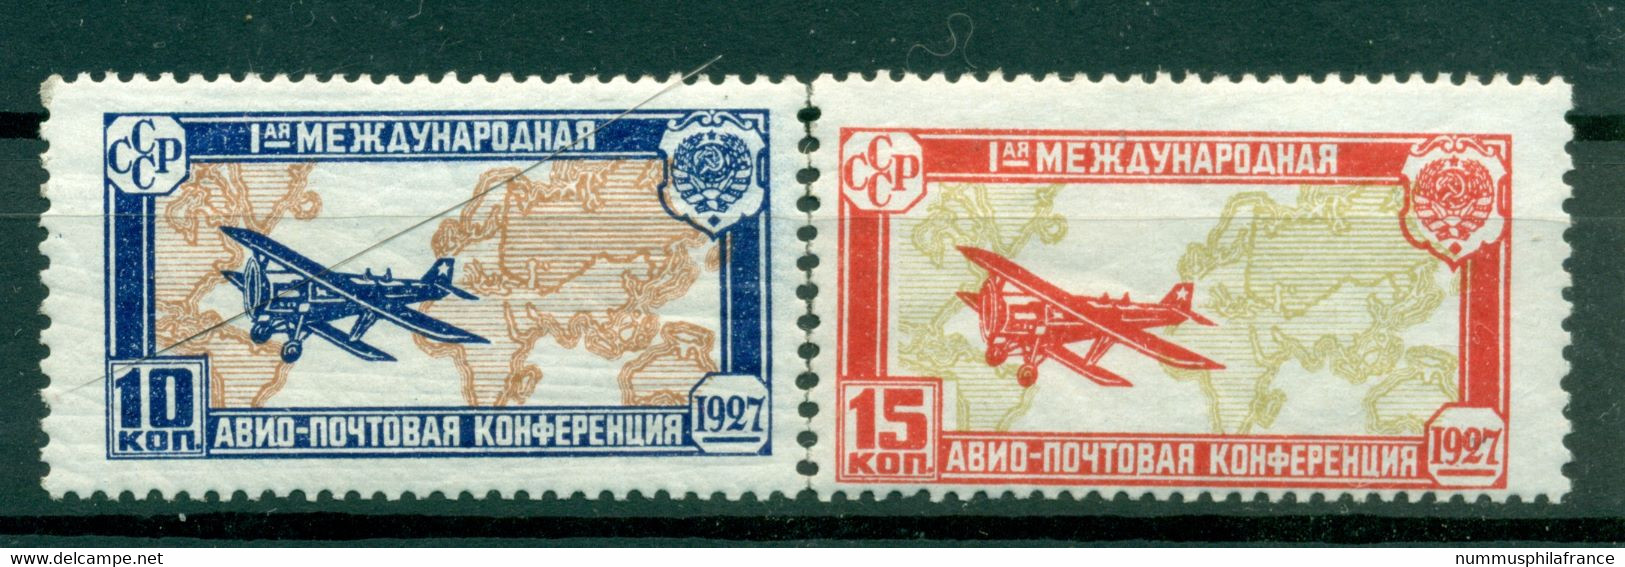 URSS 1927 - Michel N. 326/27 - Congrès De La Poste Aérienne ( Y & T N. 18/19 Poste Aérienne) - Ongebruikt